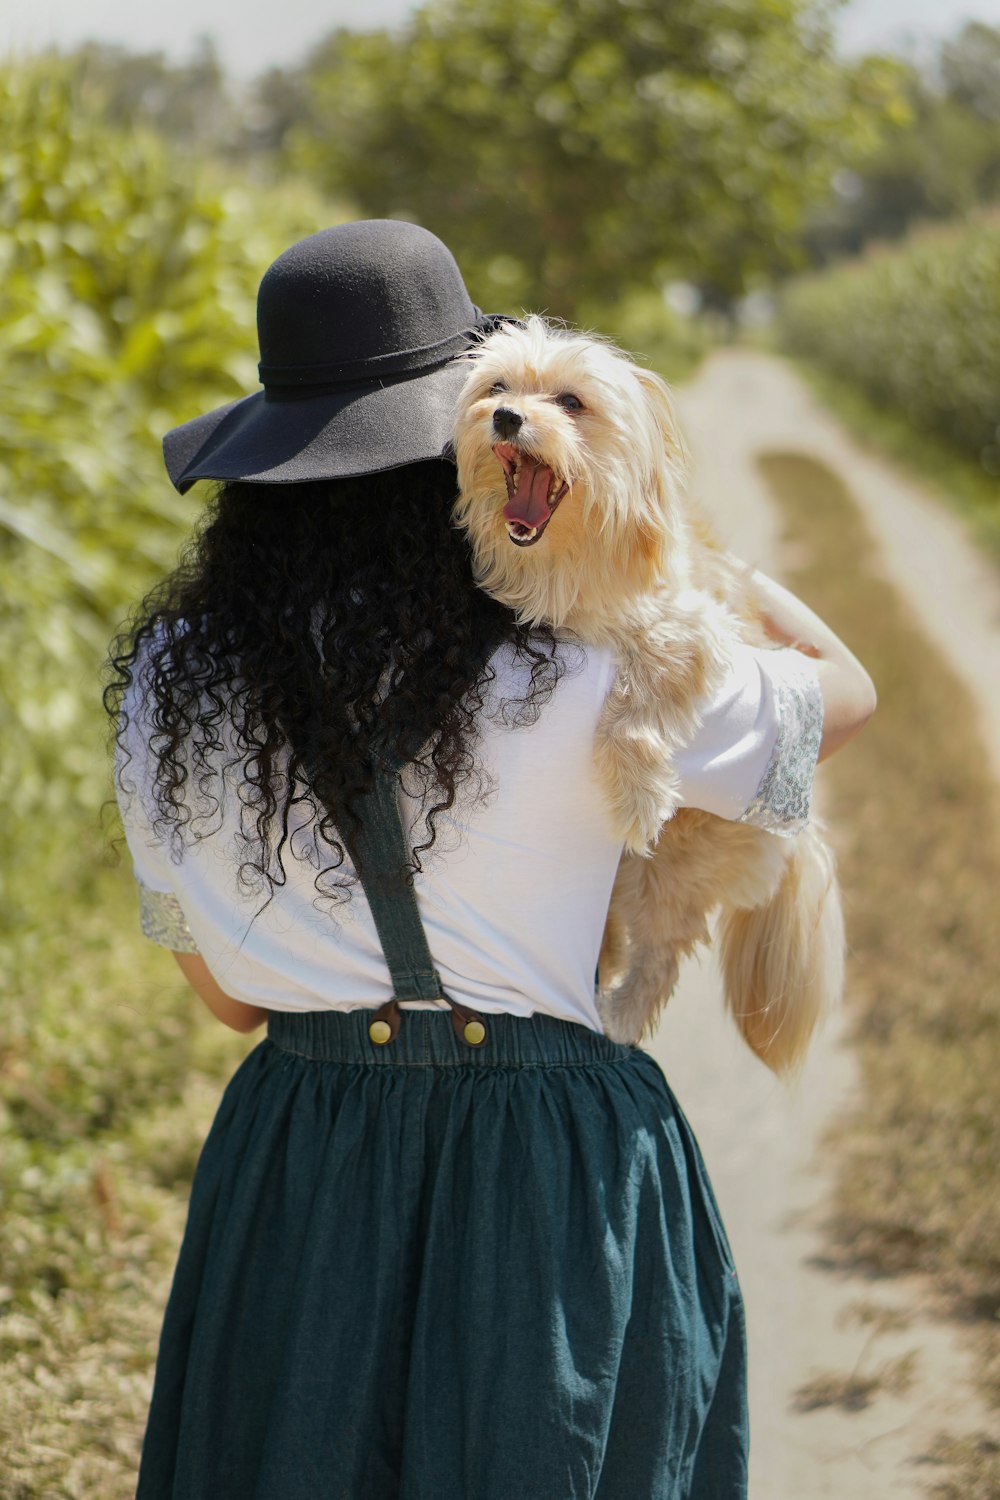 Frau mit schwarzem Hut trägt braunen, langhaarigen kleinen Hund